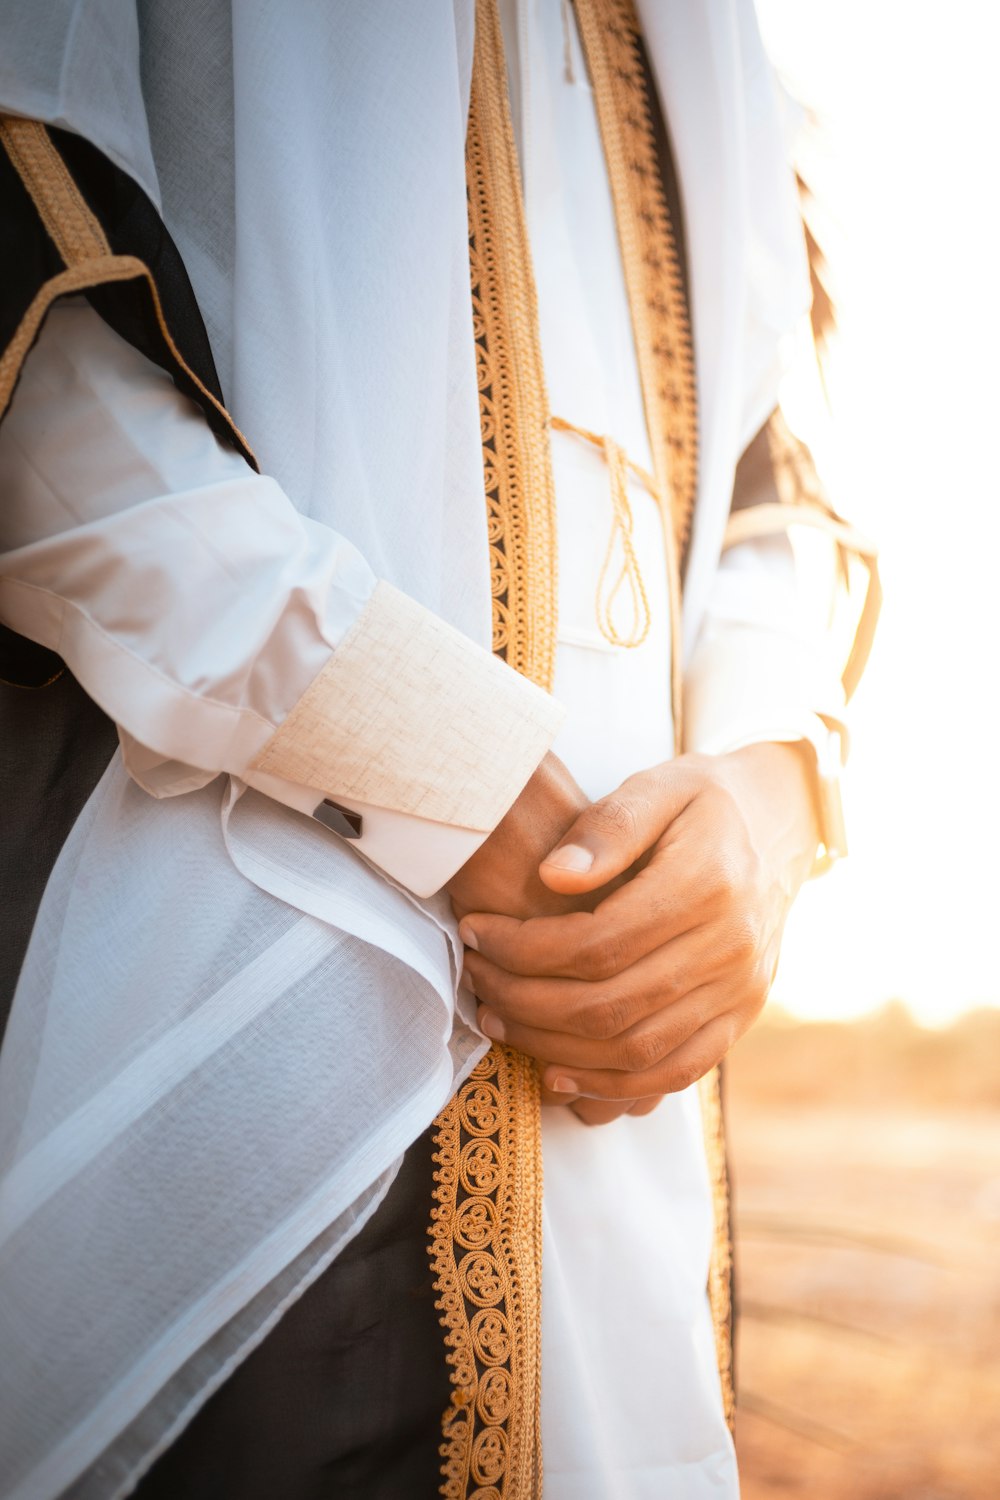 Un primer plano de una persona vestida con una túnica de sacerdote